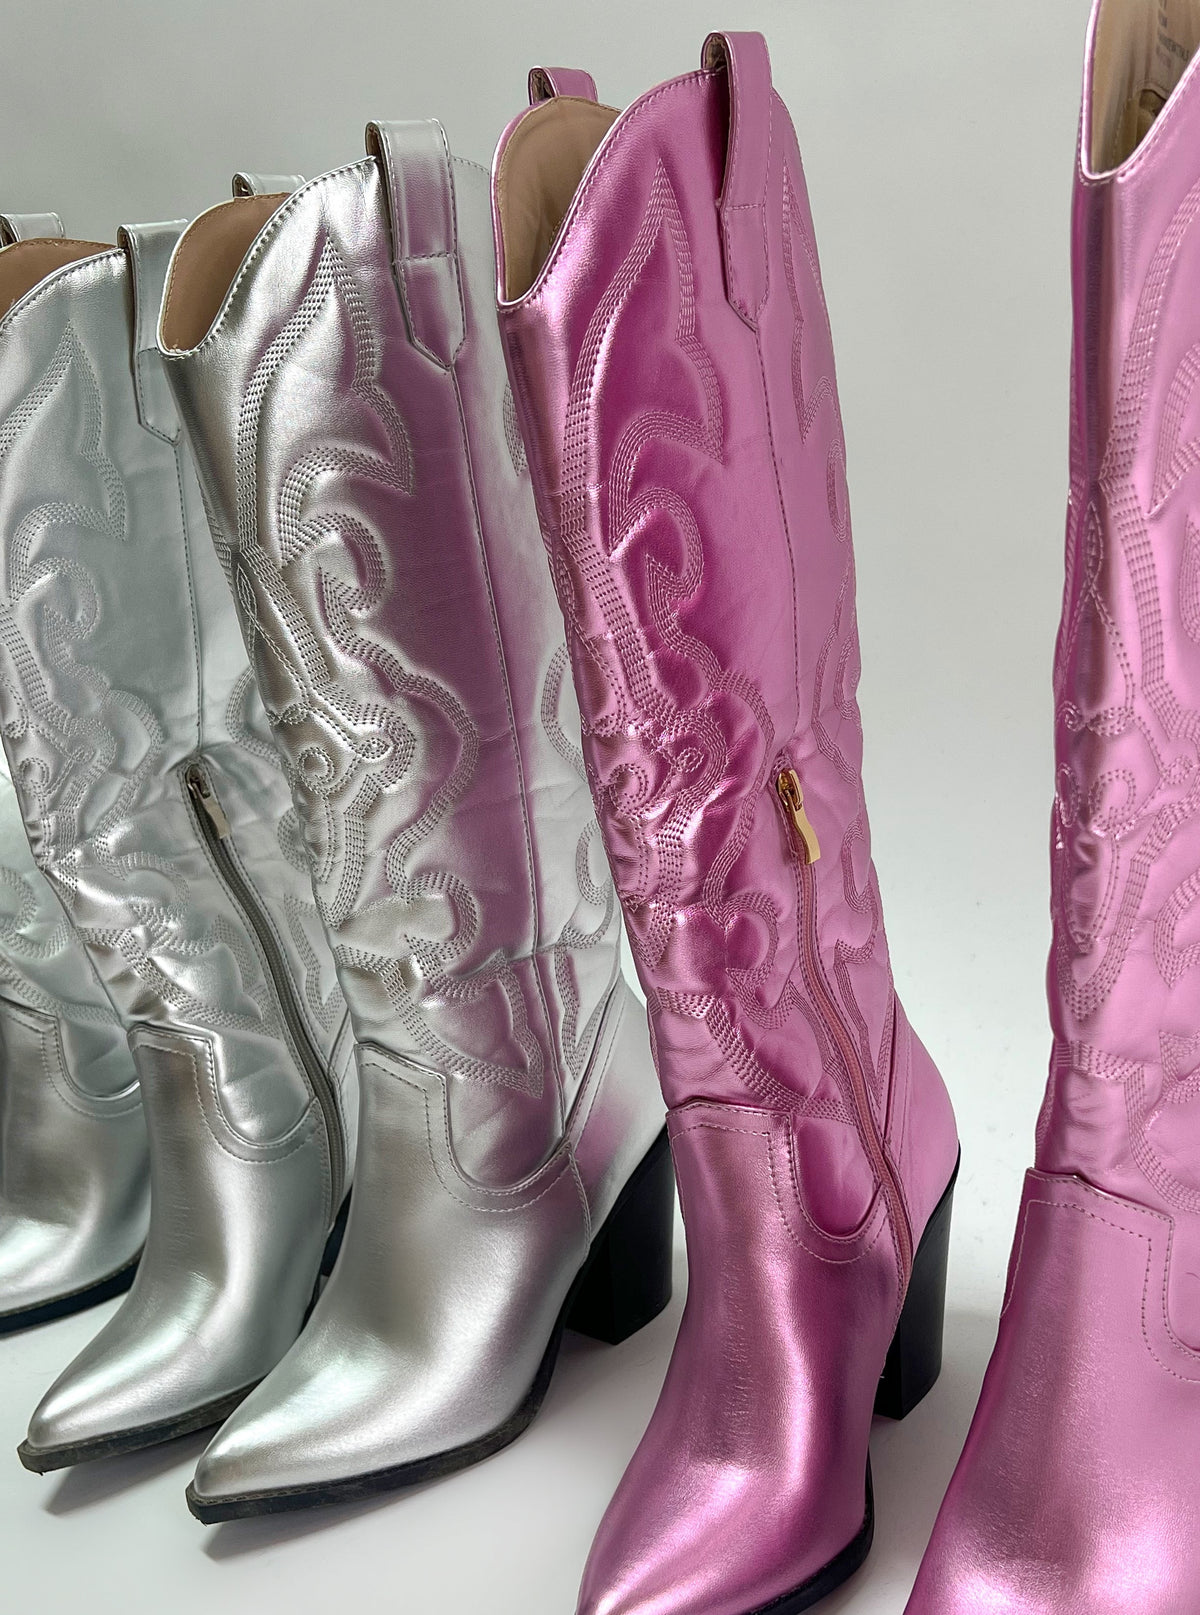 Alyssa Cowboy Boots (Silver)